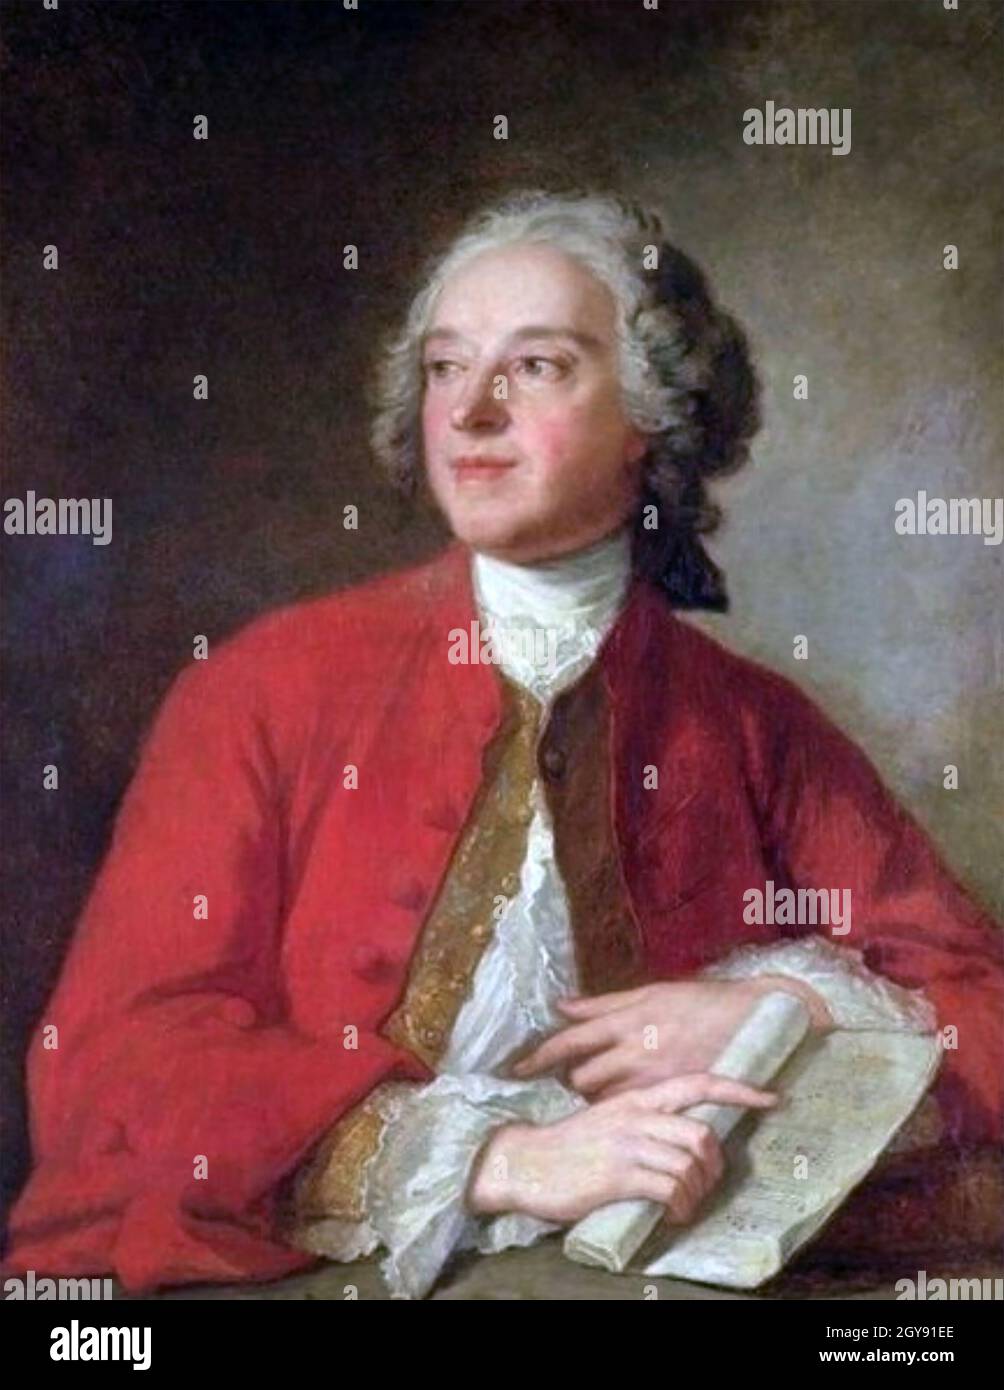 PIERRE BEAUMARCHAIS (1732-1799) inventeur français, musicien, dramaturge, financier et espion, vers 1755 Banque D'Images